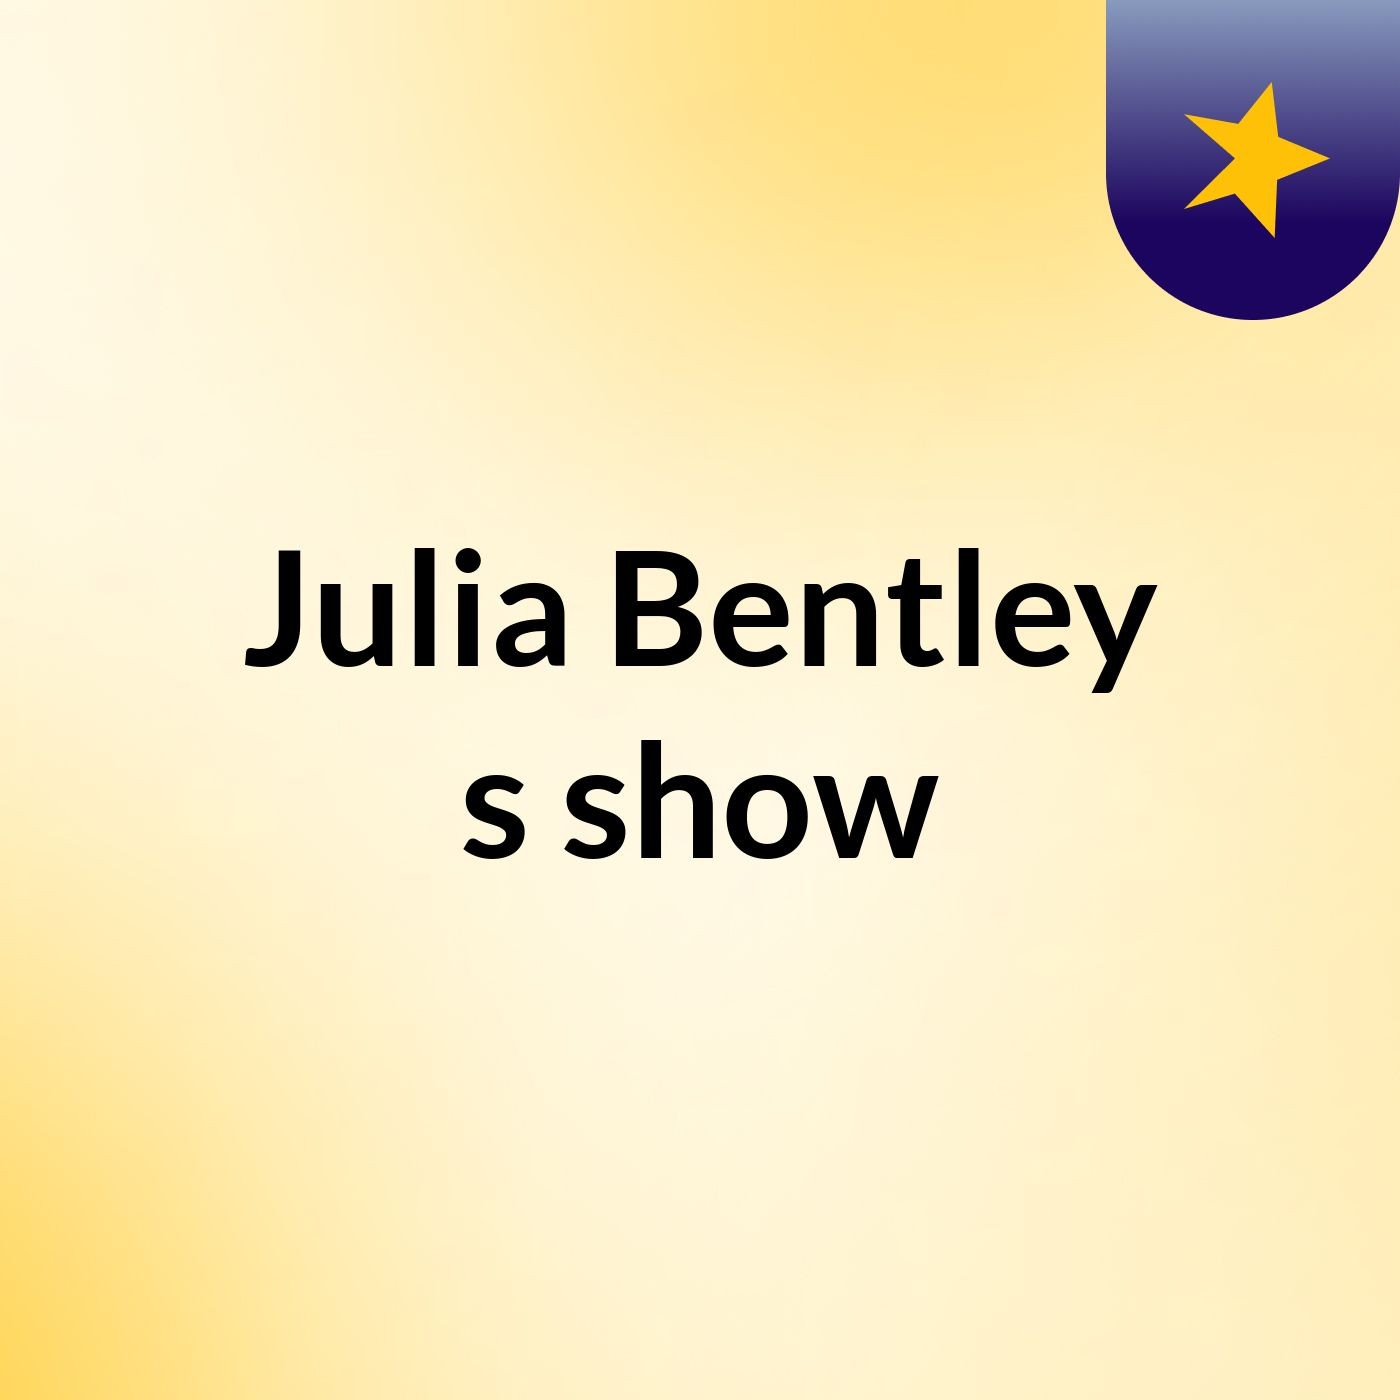 Episode 3 - Julia Bentley's show